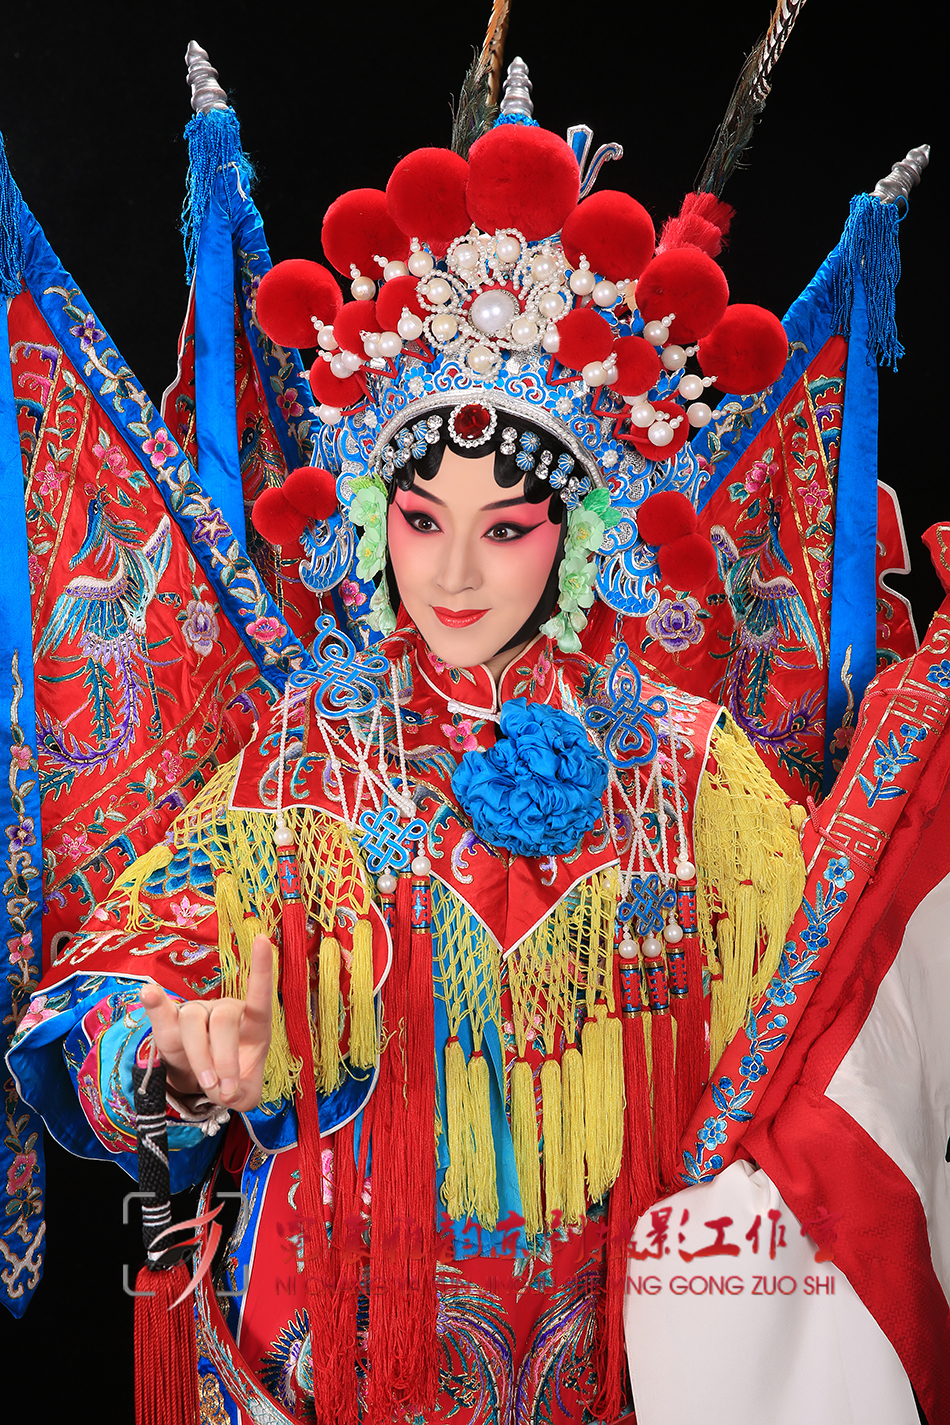 京剧《穆桂英挂帅》,是京剧大师梅兰芳等艺术家于1959年由同名豫剧